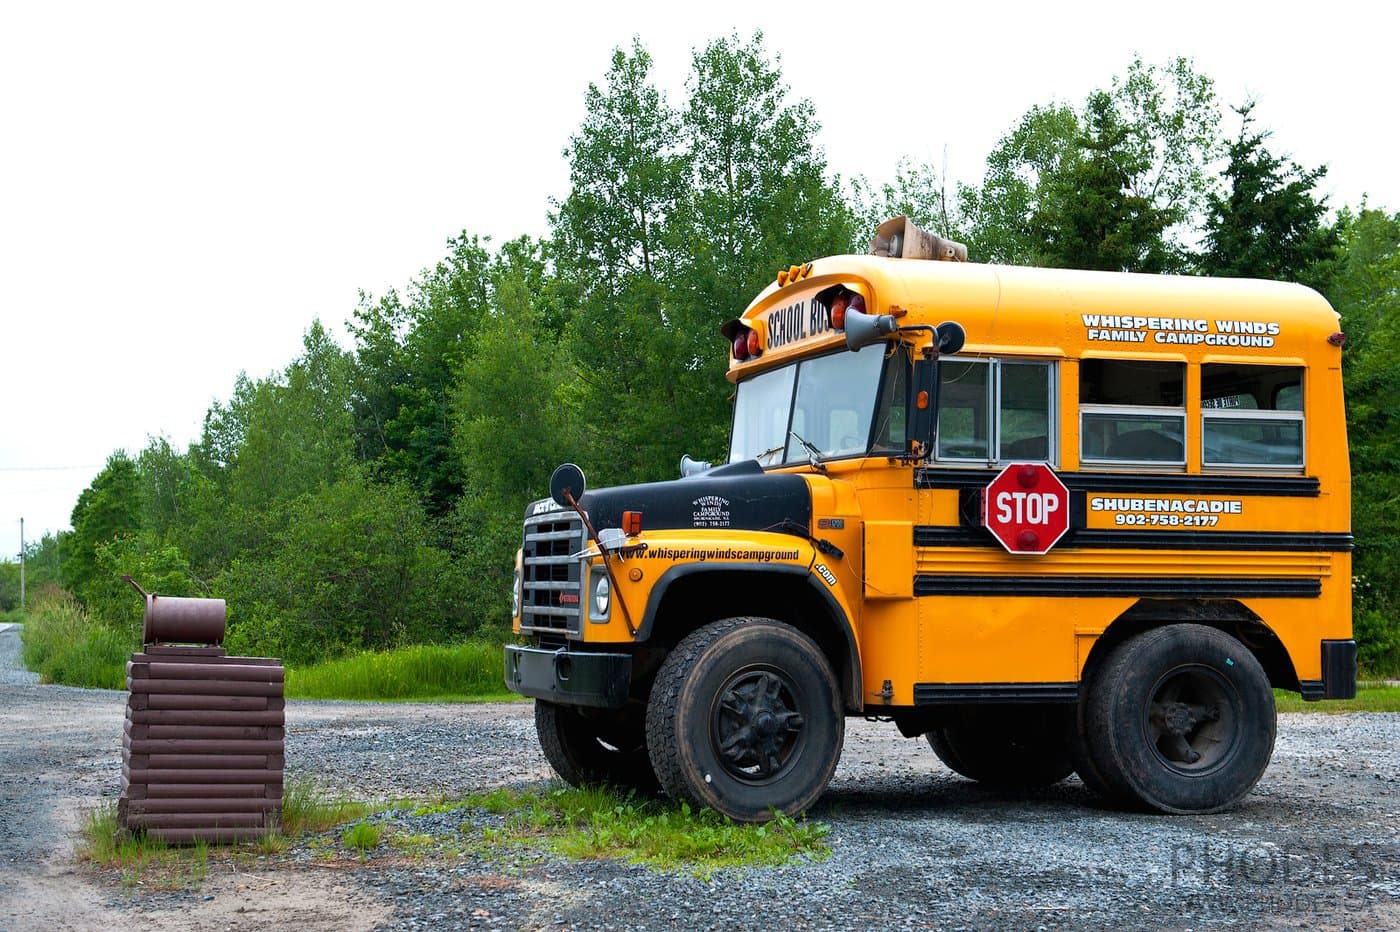 School bus on Cape Breton Island in Nova Scotia